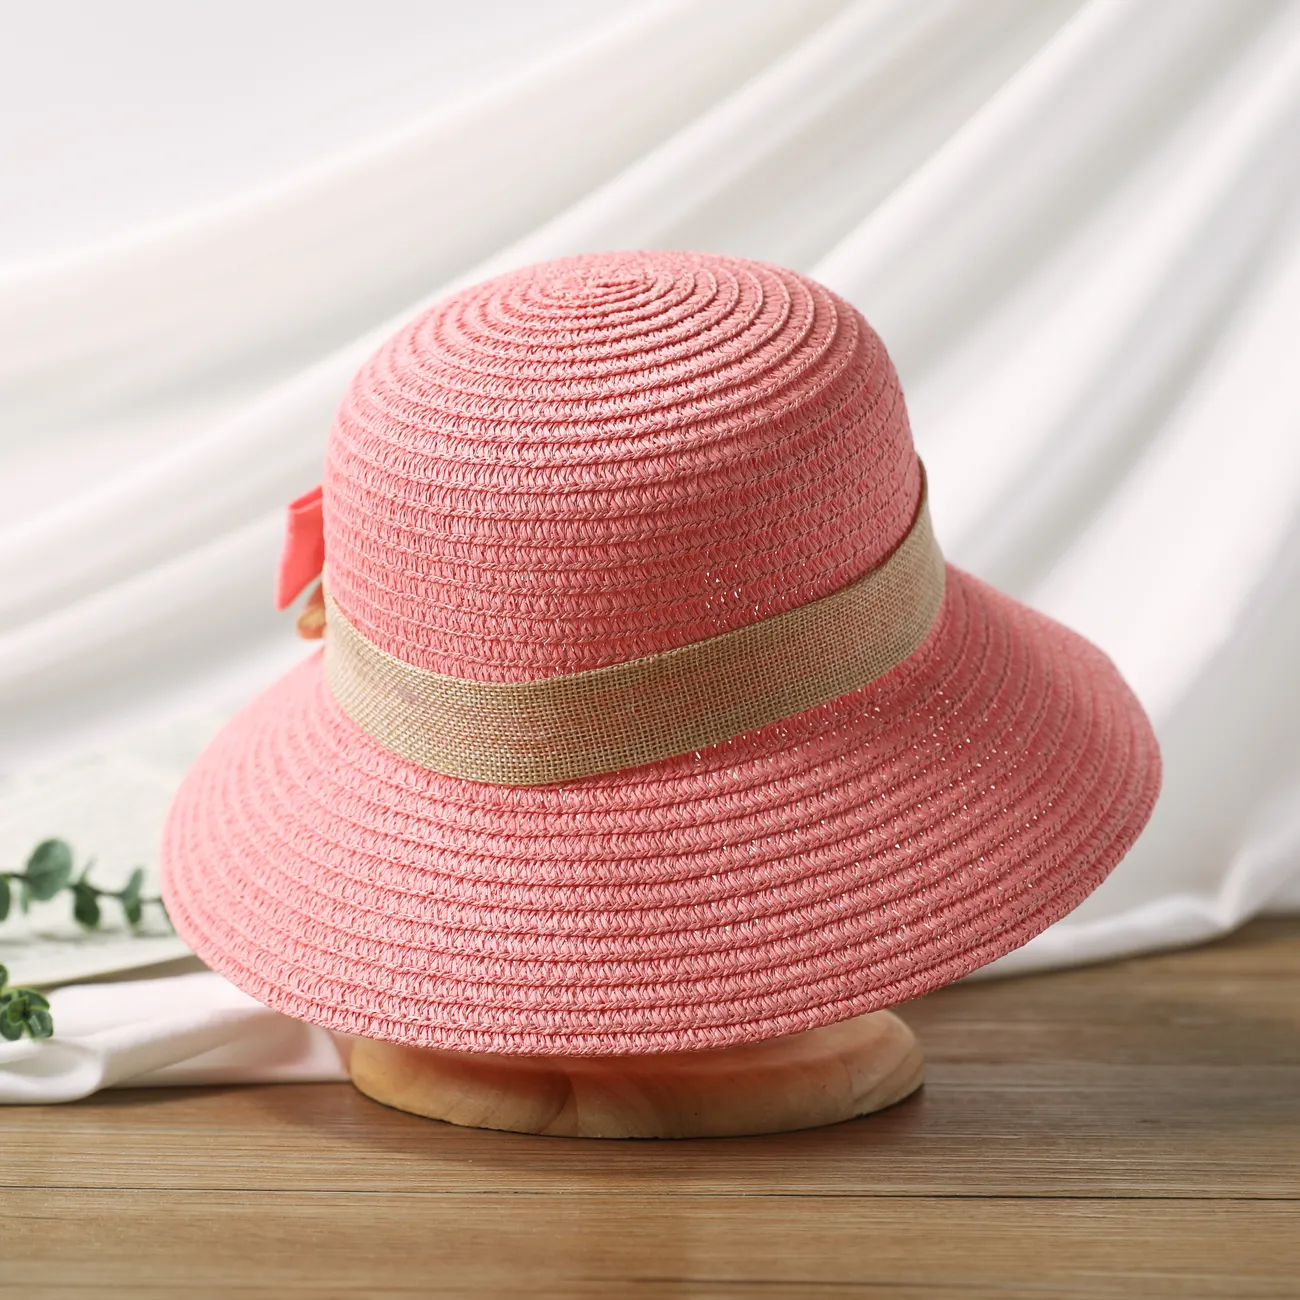 Sombrero de verano para el sol para niñas con moño y ala enrollada, sombrero de paja de playa para viajes y vacaciones Rosado big image 1